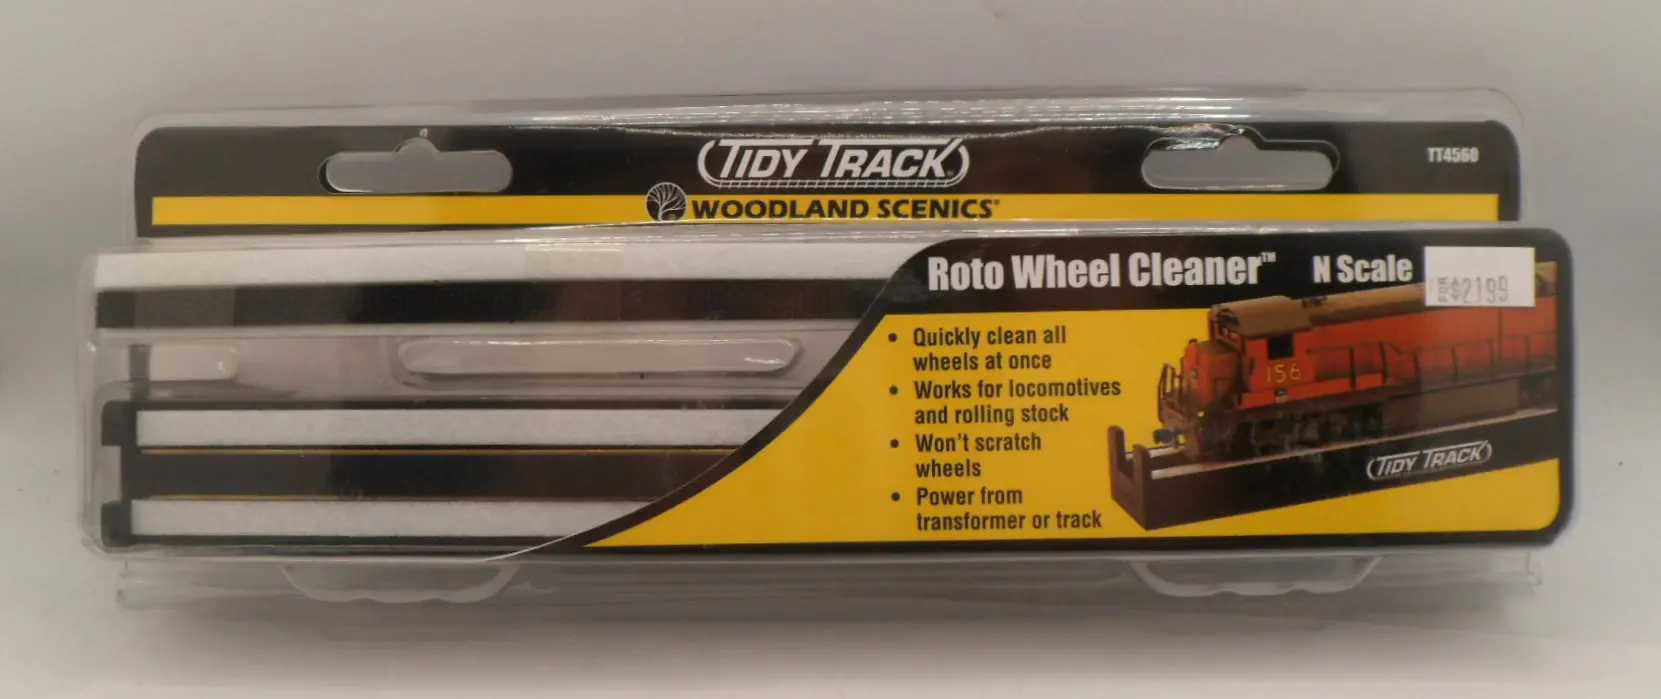 Woodland Scenics TT4560 Roto Wheel Cleaner N Scale